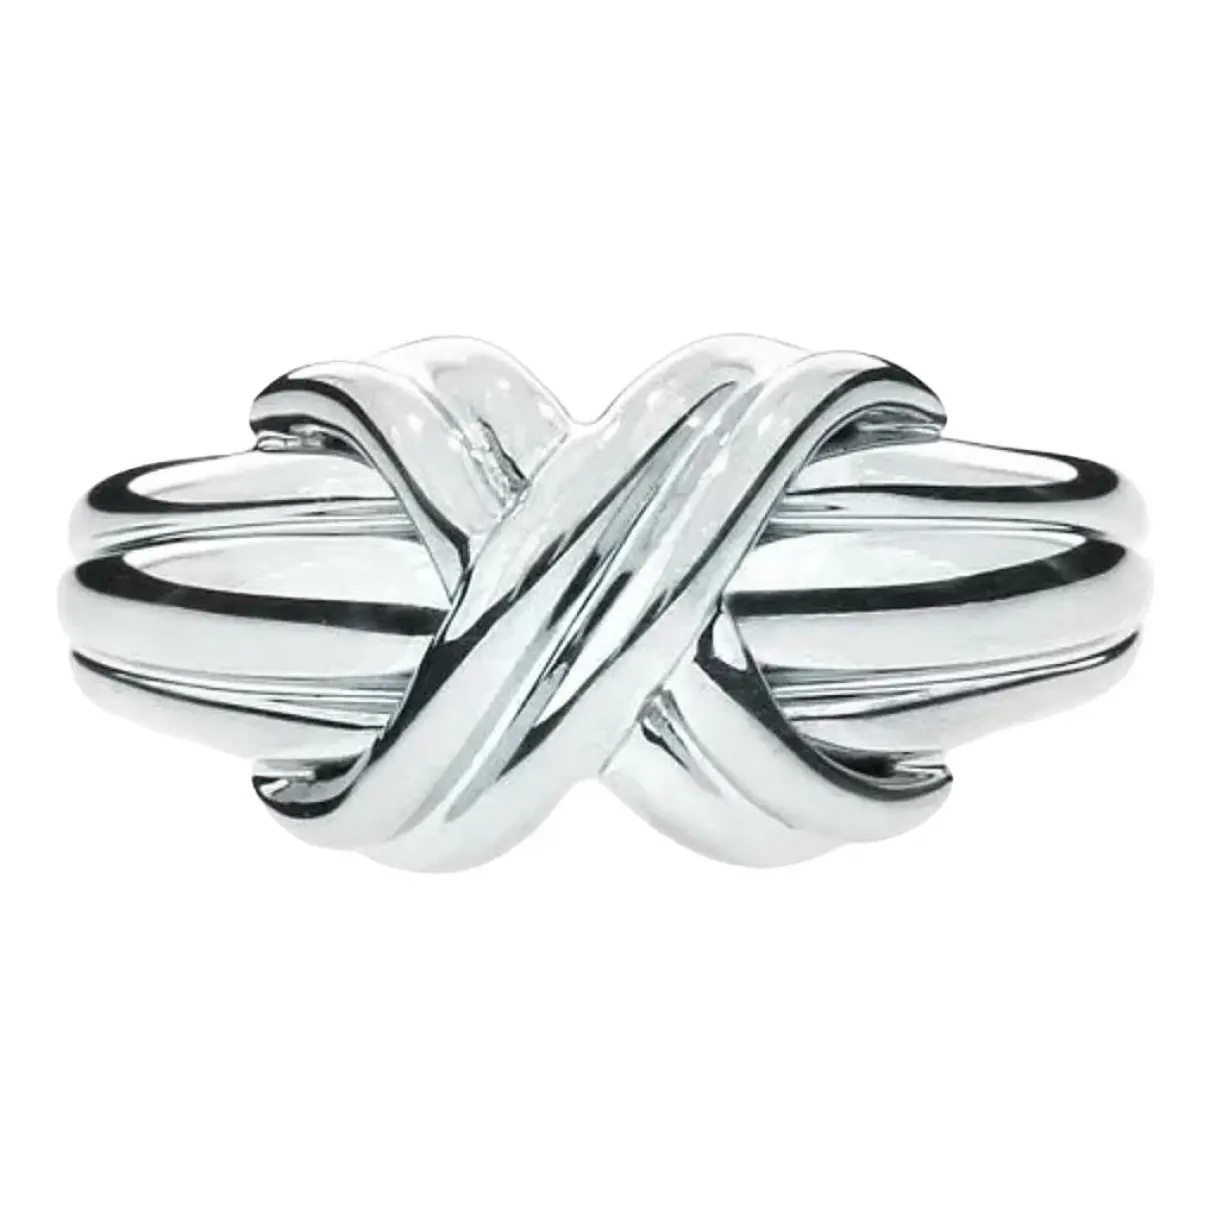 Atlas silver ring